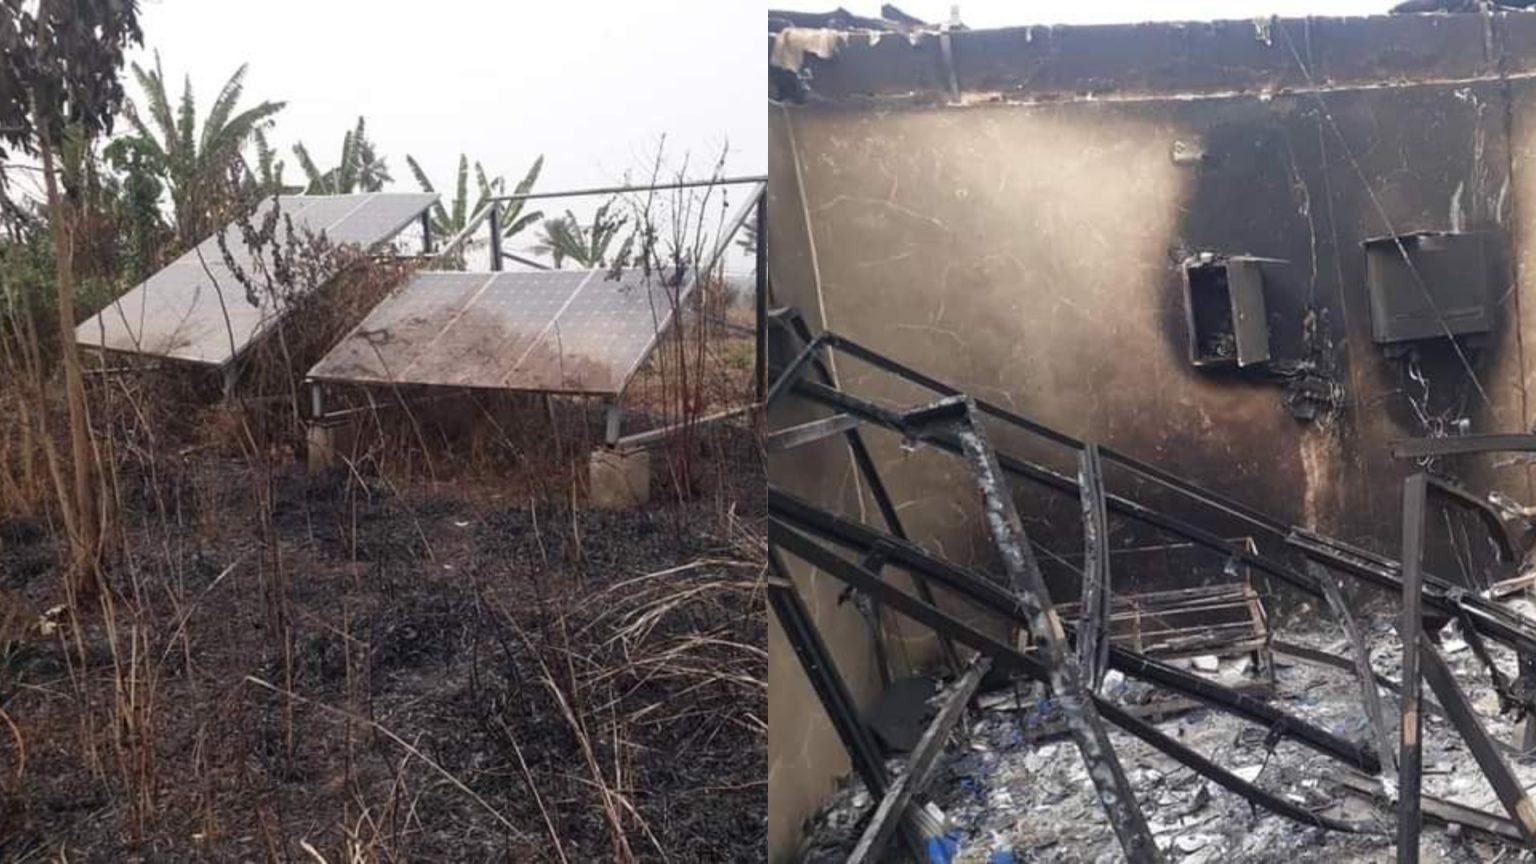 Fulani herdsmen set solar power station on fire in Ogun